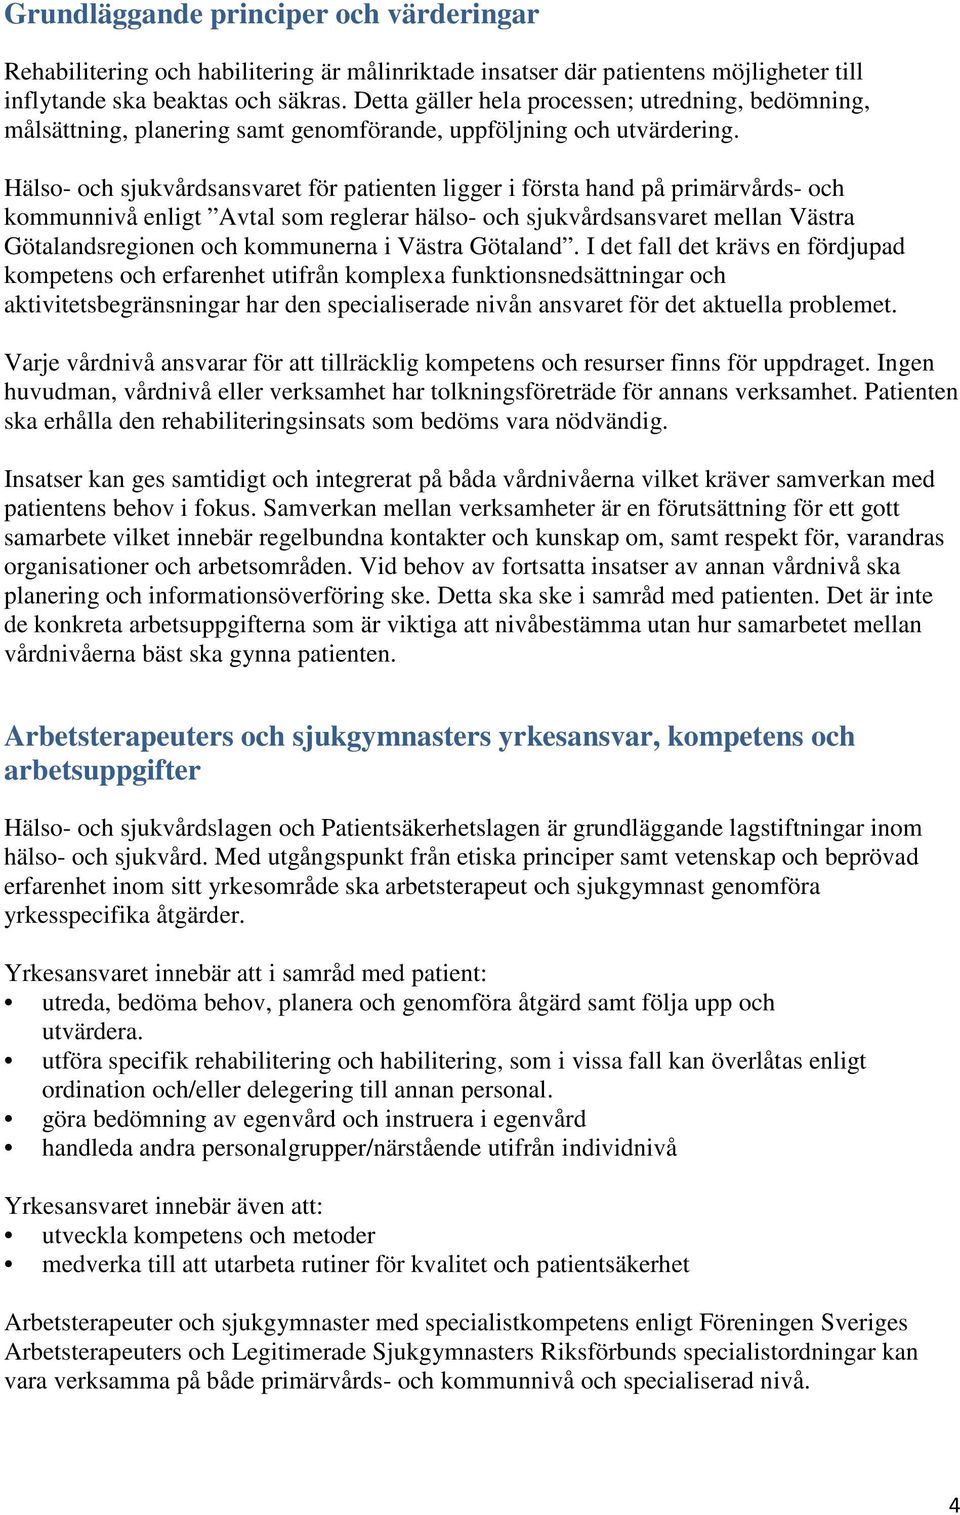 Hälso- och sjukvårdsansvaret för patienten ligger i första hand på primärvårds- och kommunnivå enligt Avtal som reglerar hälso- och sjukvårdsansvaret mellan Västra Götalandsregionen och kommunerna i